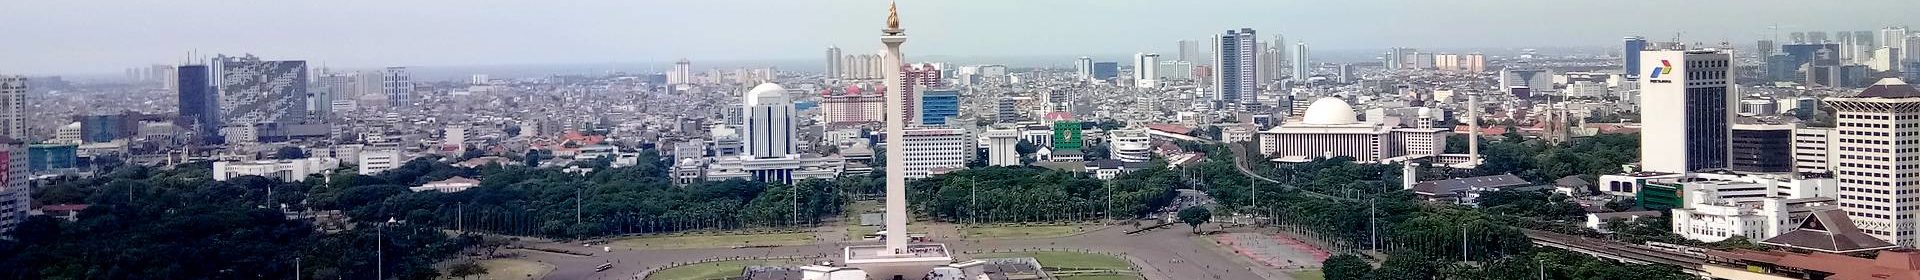 View of Jakarta skyline